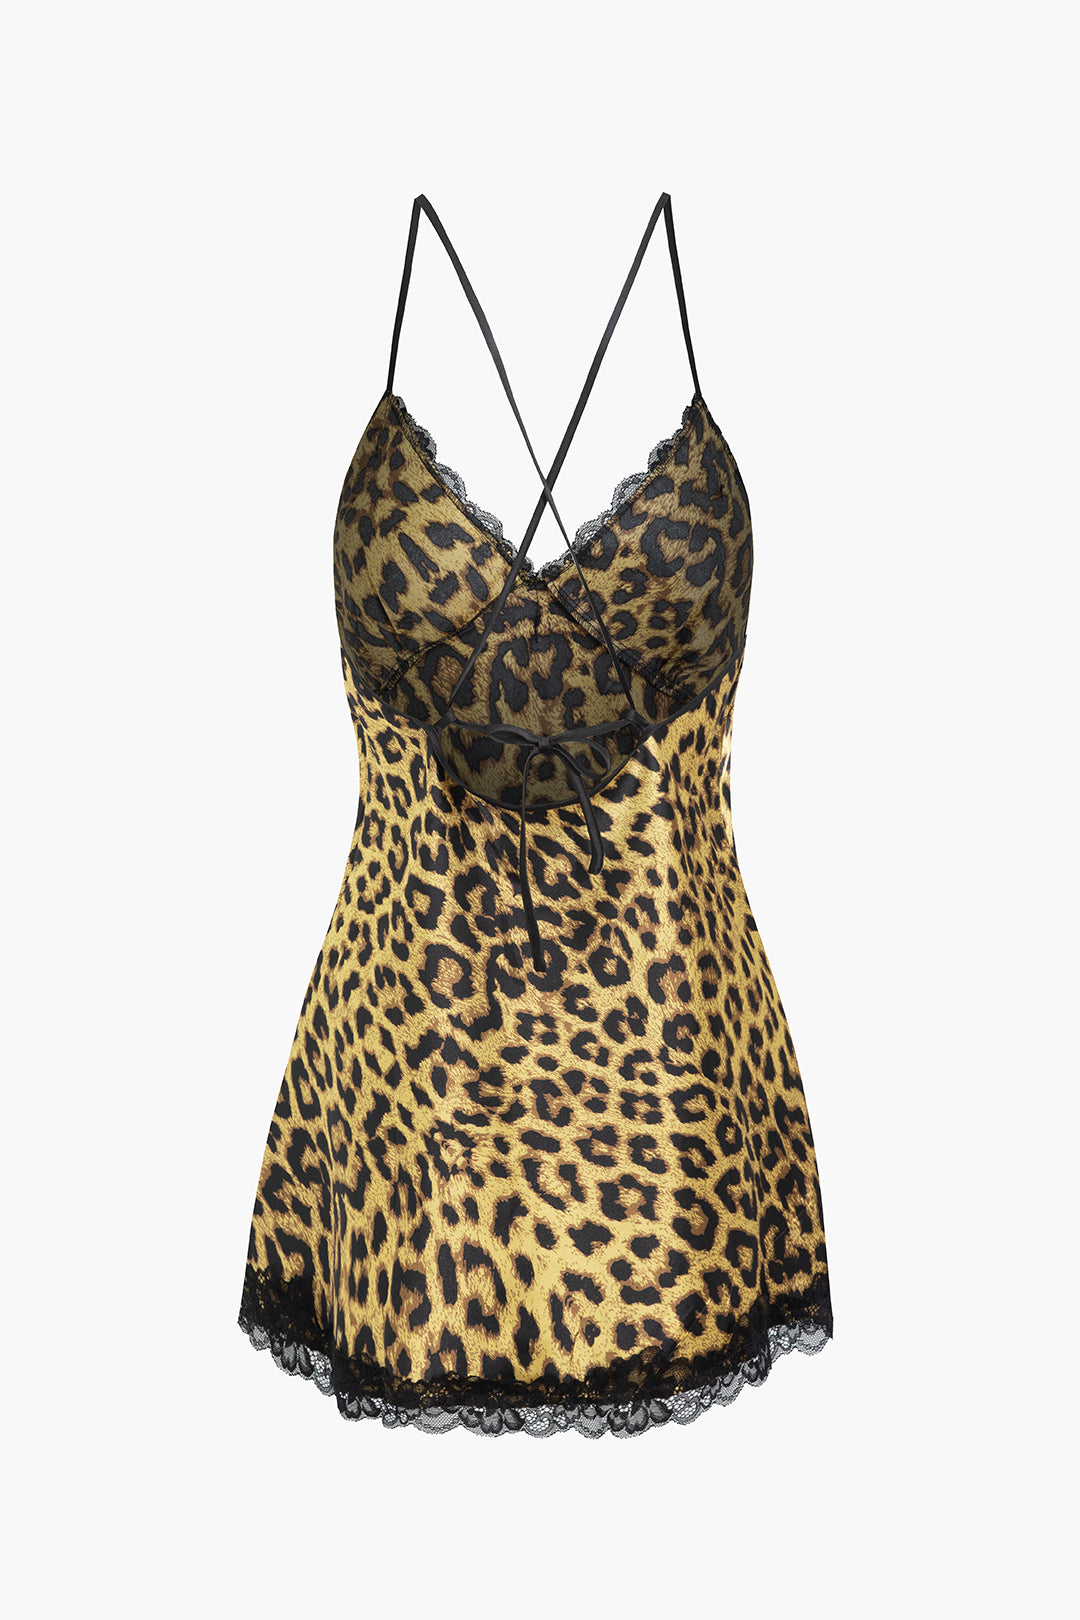 Leopard Print Lace Trim Dress Lingerie